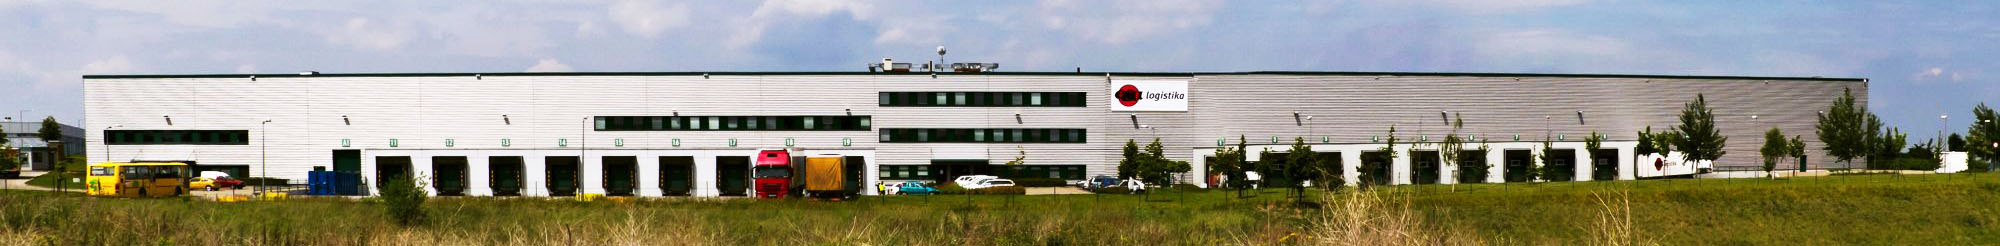 Skladování - budova chlazeného a distribučního skladu v Jažlovicích, přední pohled, logo ESA logistika, rampy, parkoviště, kamiony, zeleň